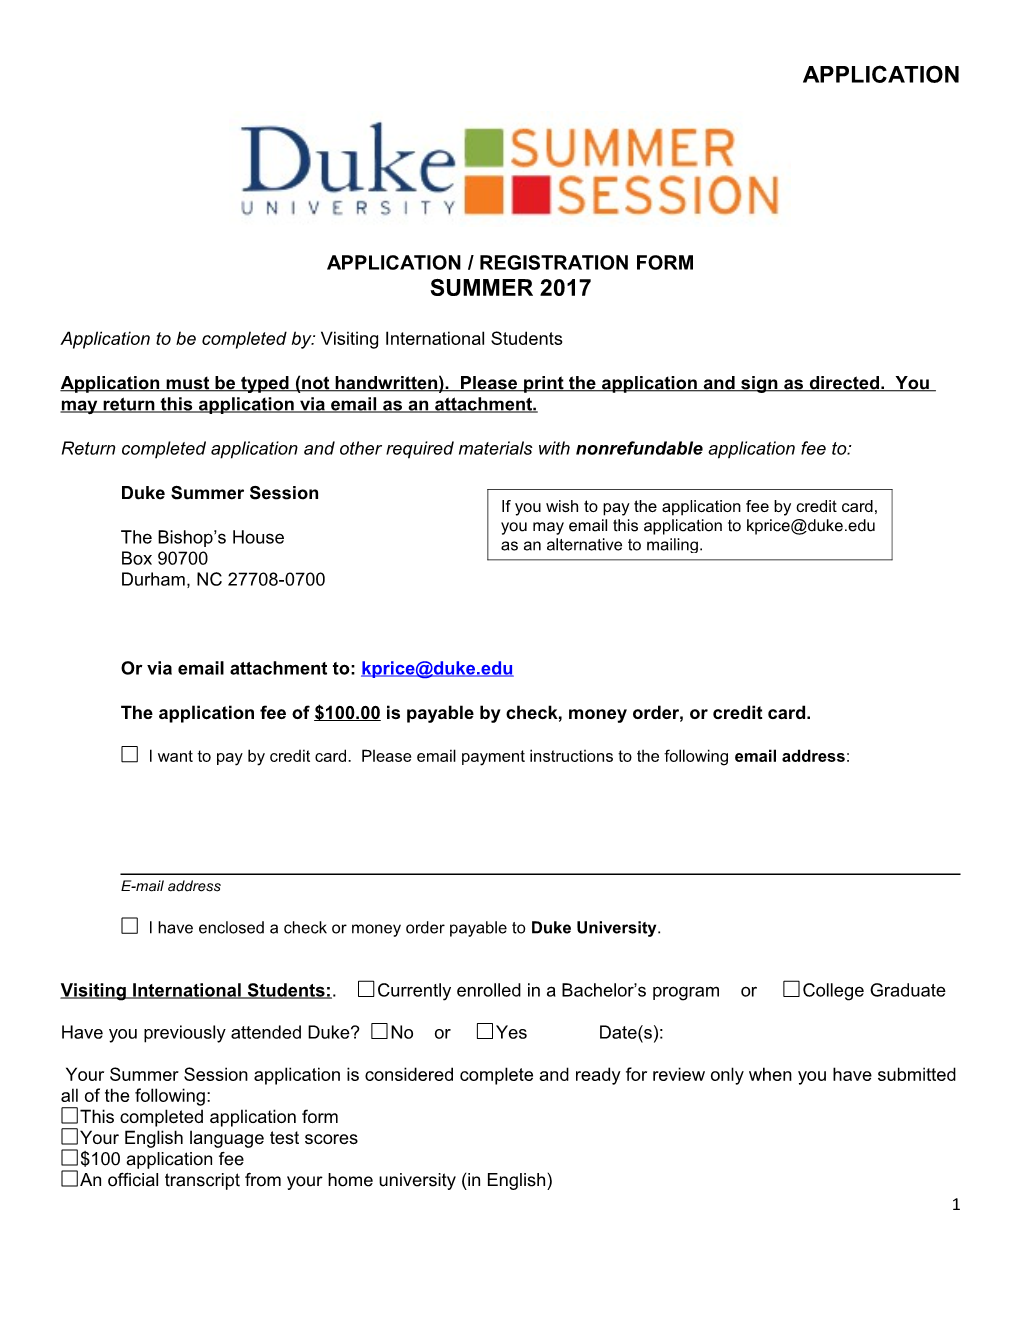 Duke University Summer Session s1